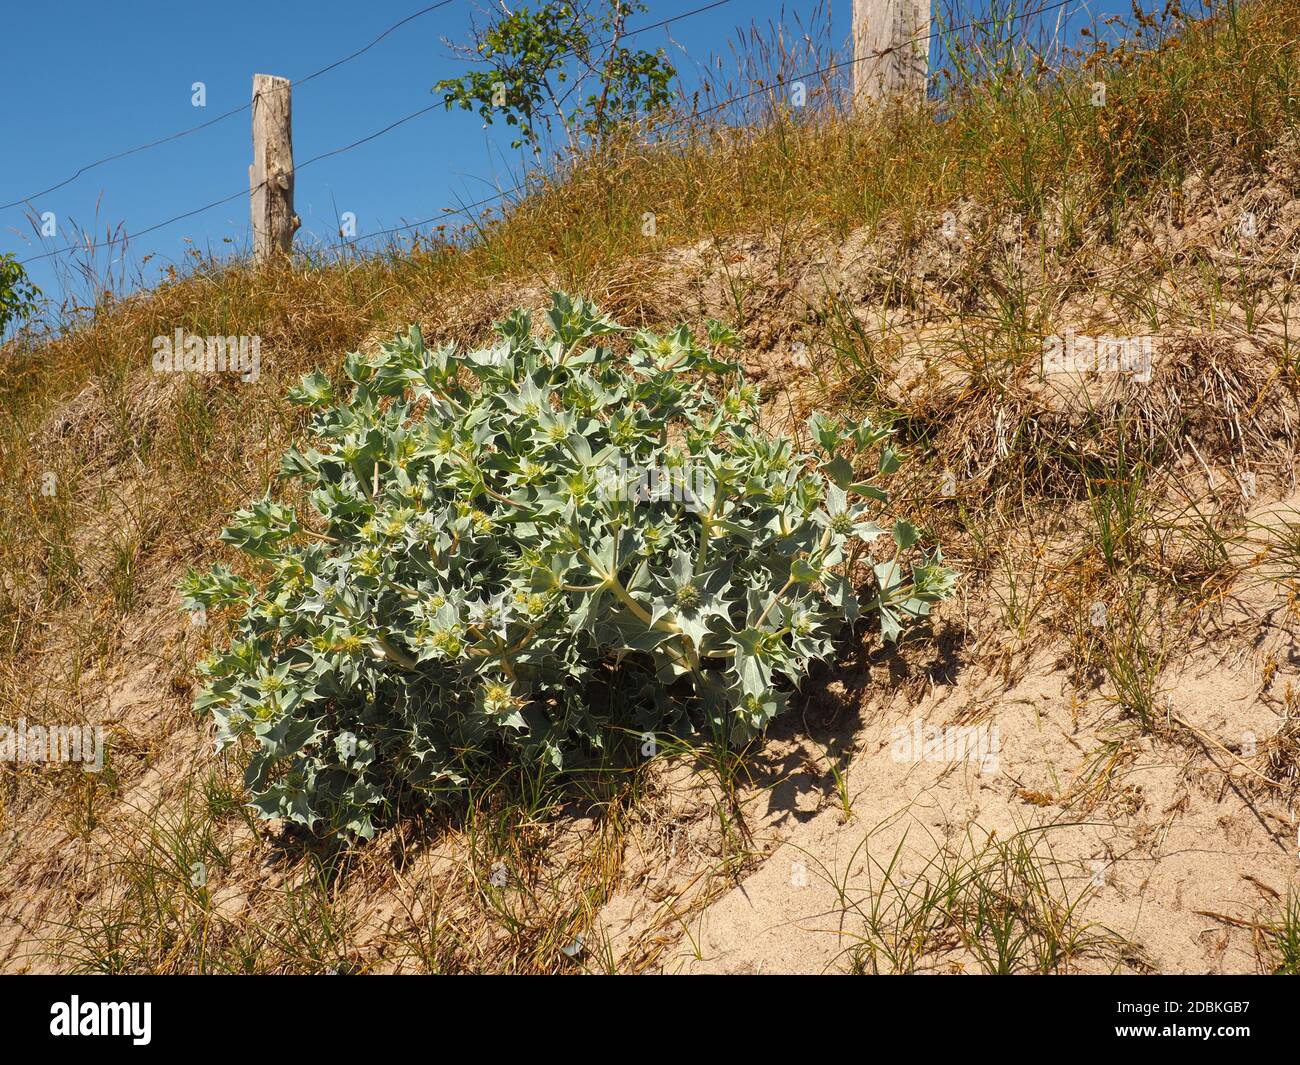 Magnifique holly de mer (Eryngium maritimum) sur une dune, espèce végétale en voie de disparition Banque D'Images